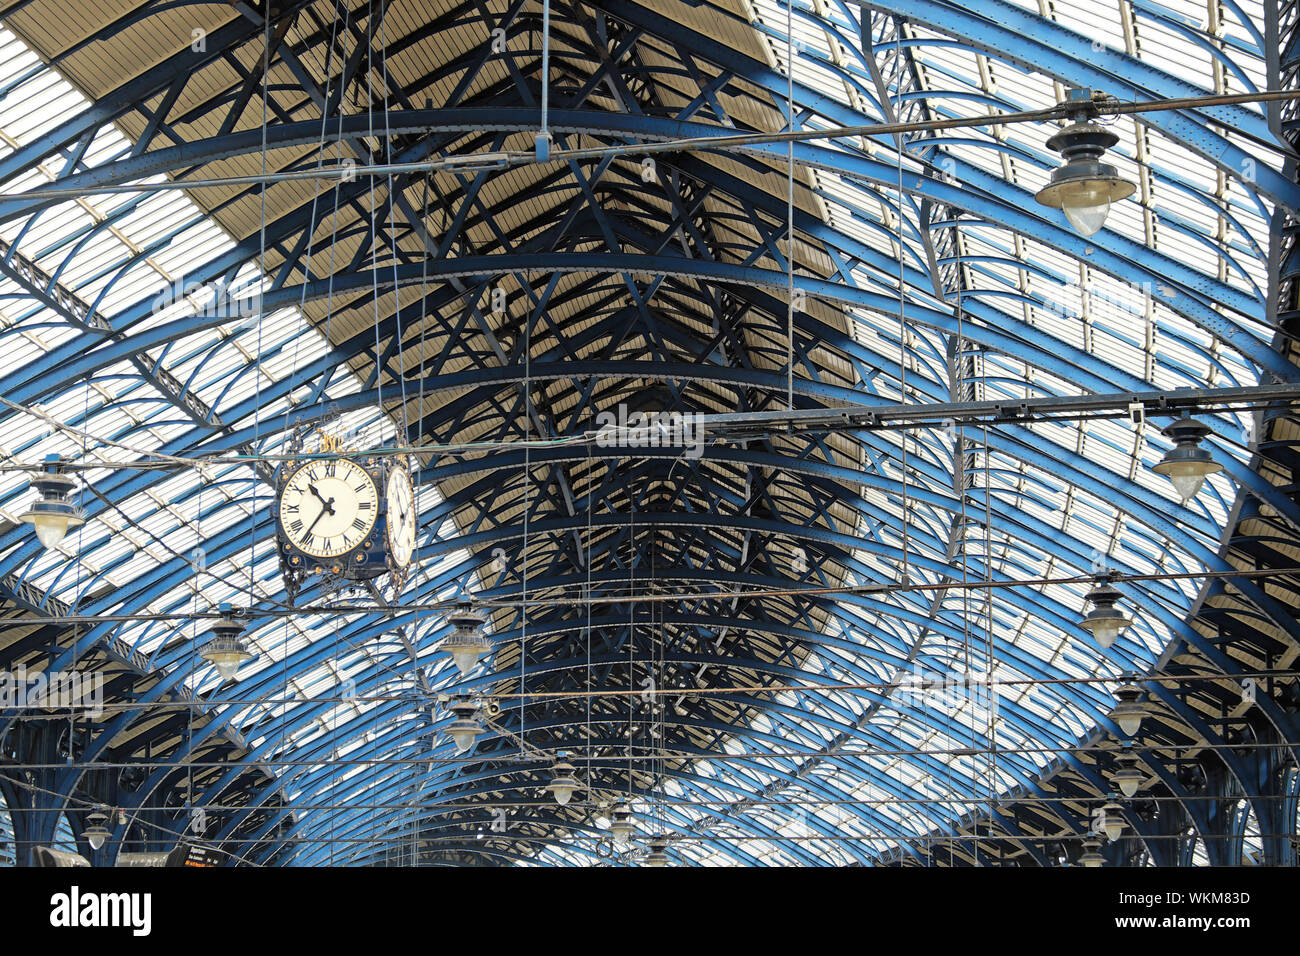 La gare de Brighton bâtiment historique gare vue de l'intérieur de la construction du toit en verre et fer à repasser et réveil Angleterre Grande-bretagne UK KATHY DEWITT Banque D'Images